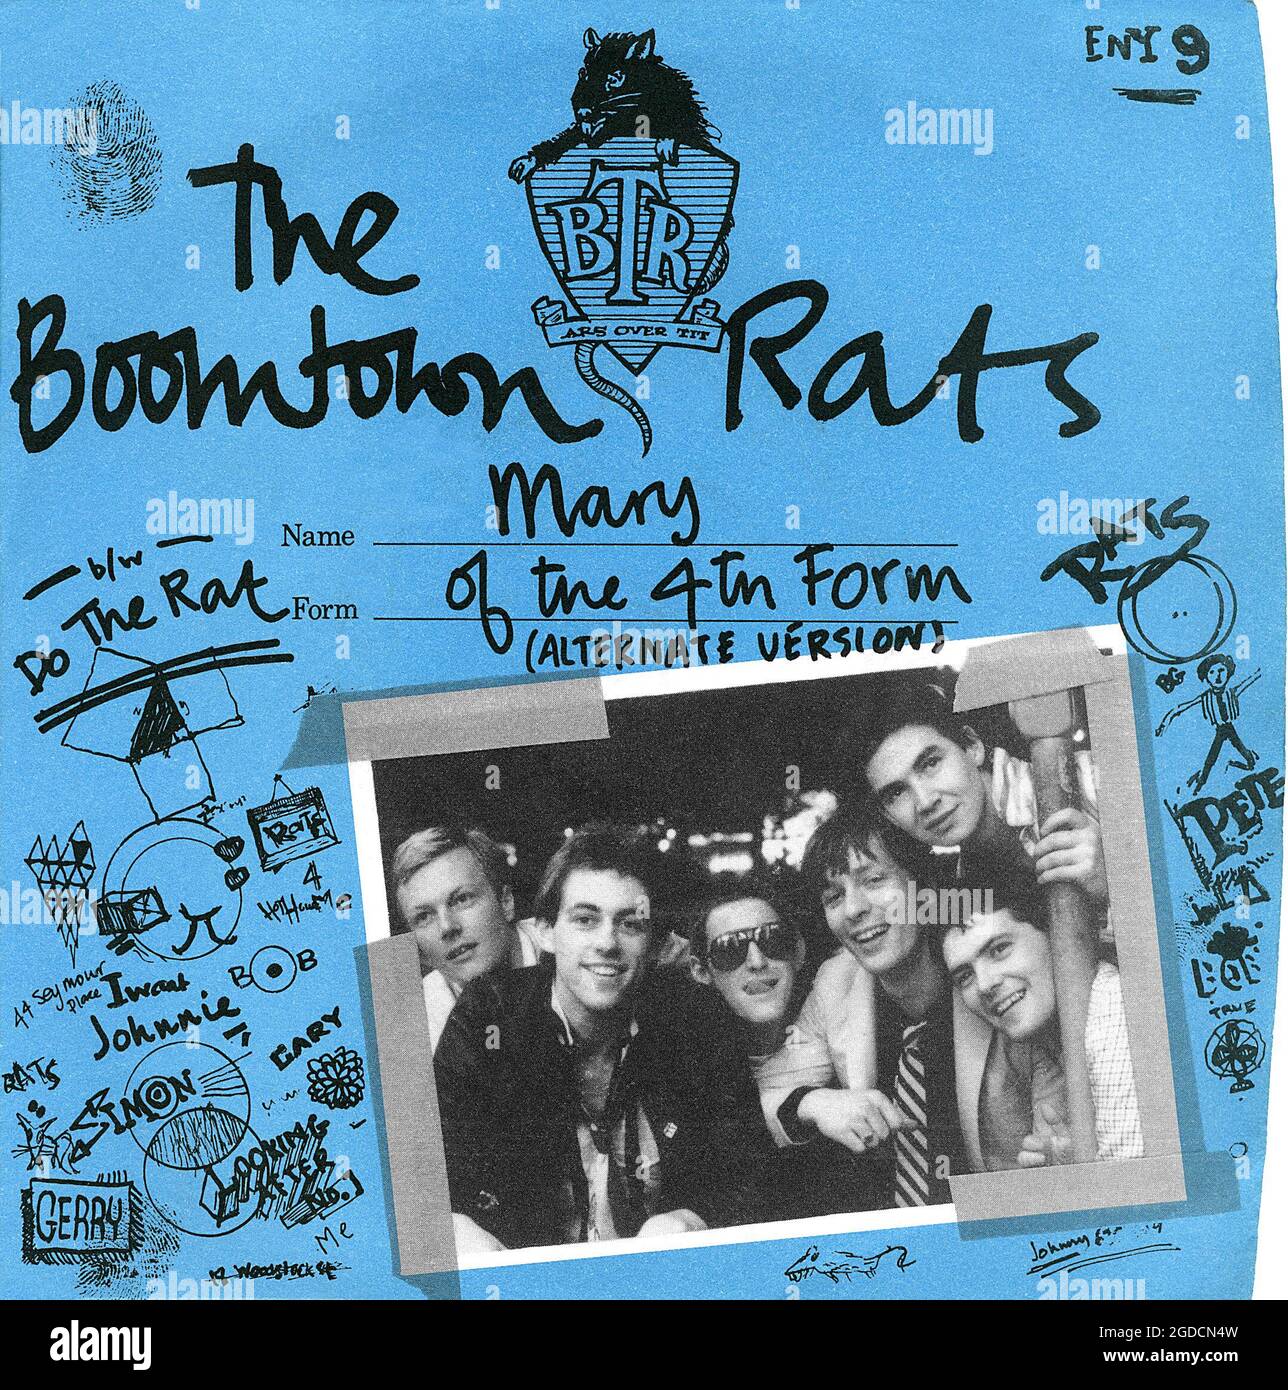 Frontcover der Plattenhülle für die UK 45 rpm Vinyl Single von Mary of the 4th Form von den Boomtown Rats. Herausgegeben auf dem Label Ensign am 11. November 1977. Geschrieben von Bob Geldof und produziert von Robert John lange. Stockfoto